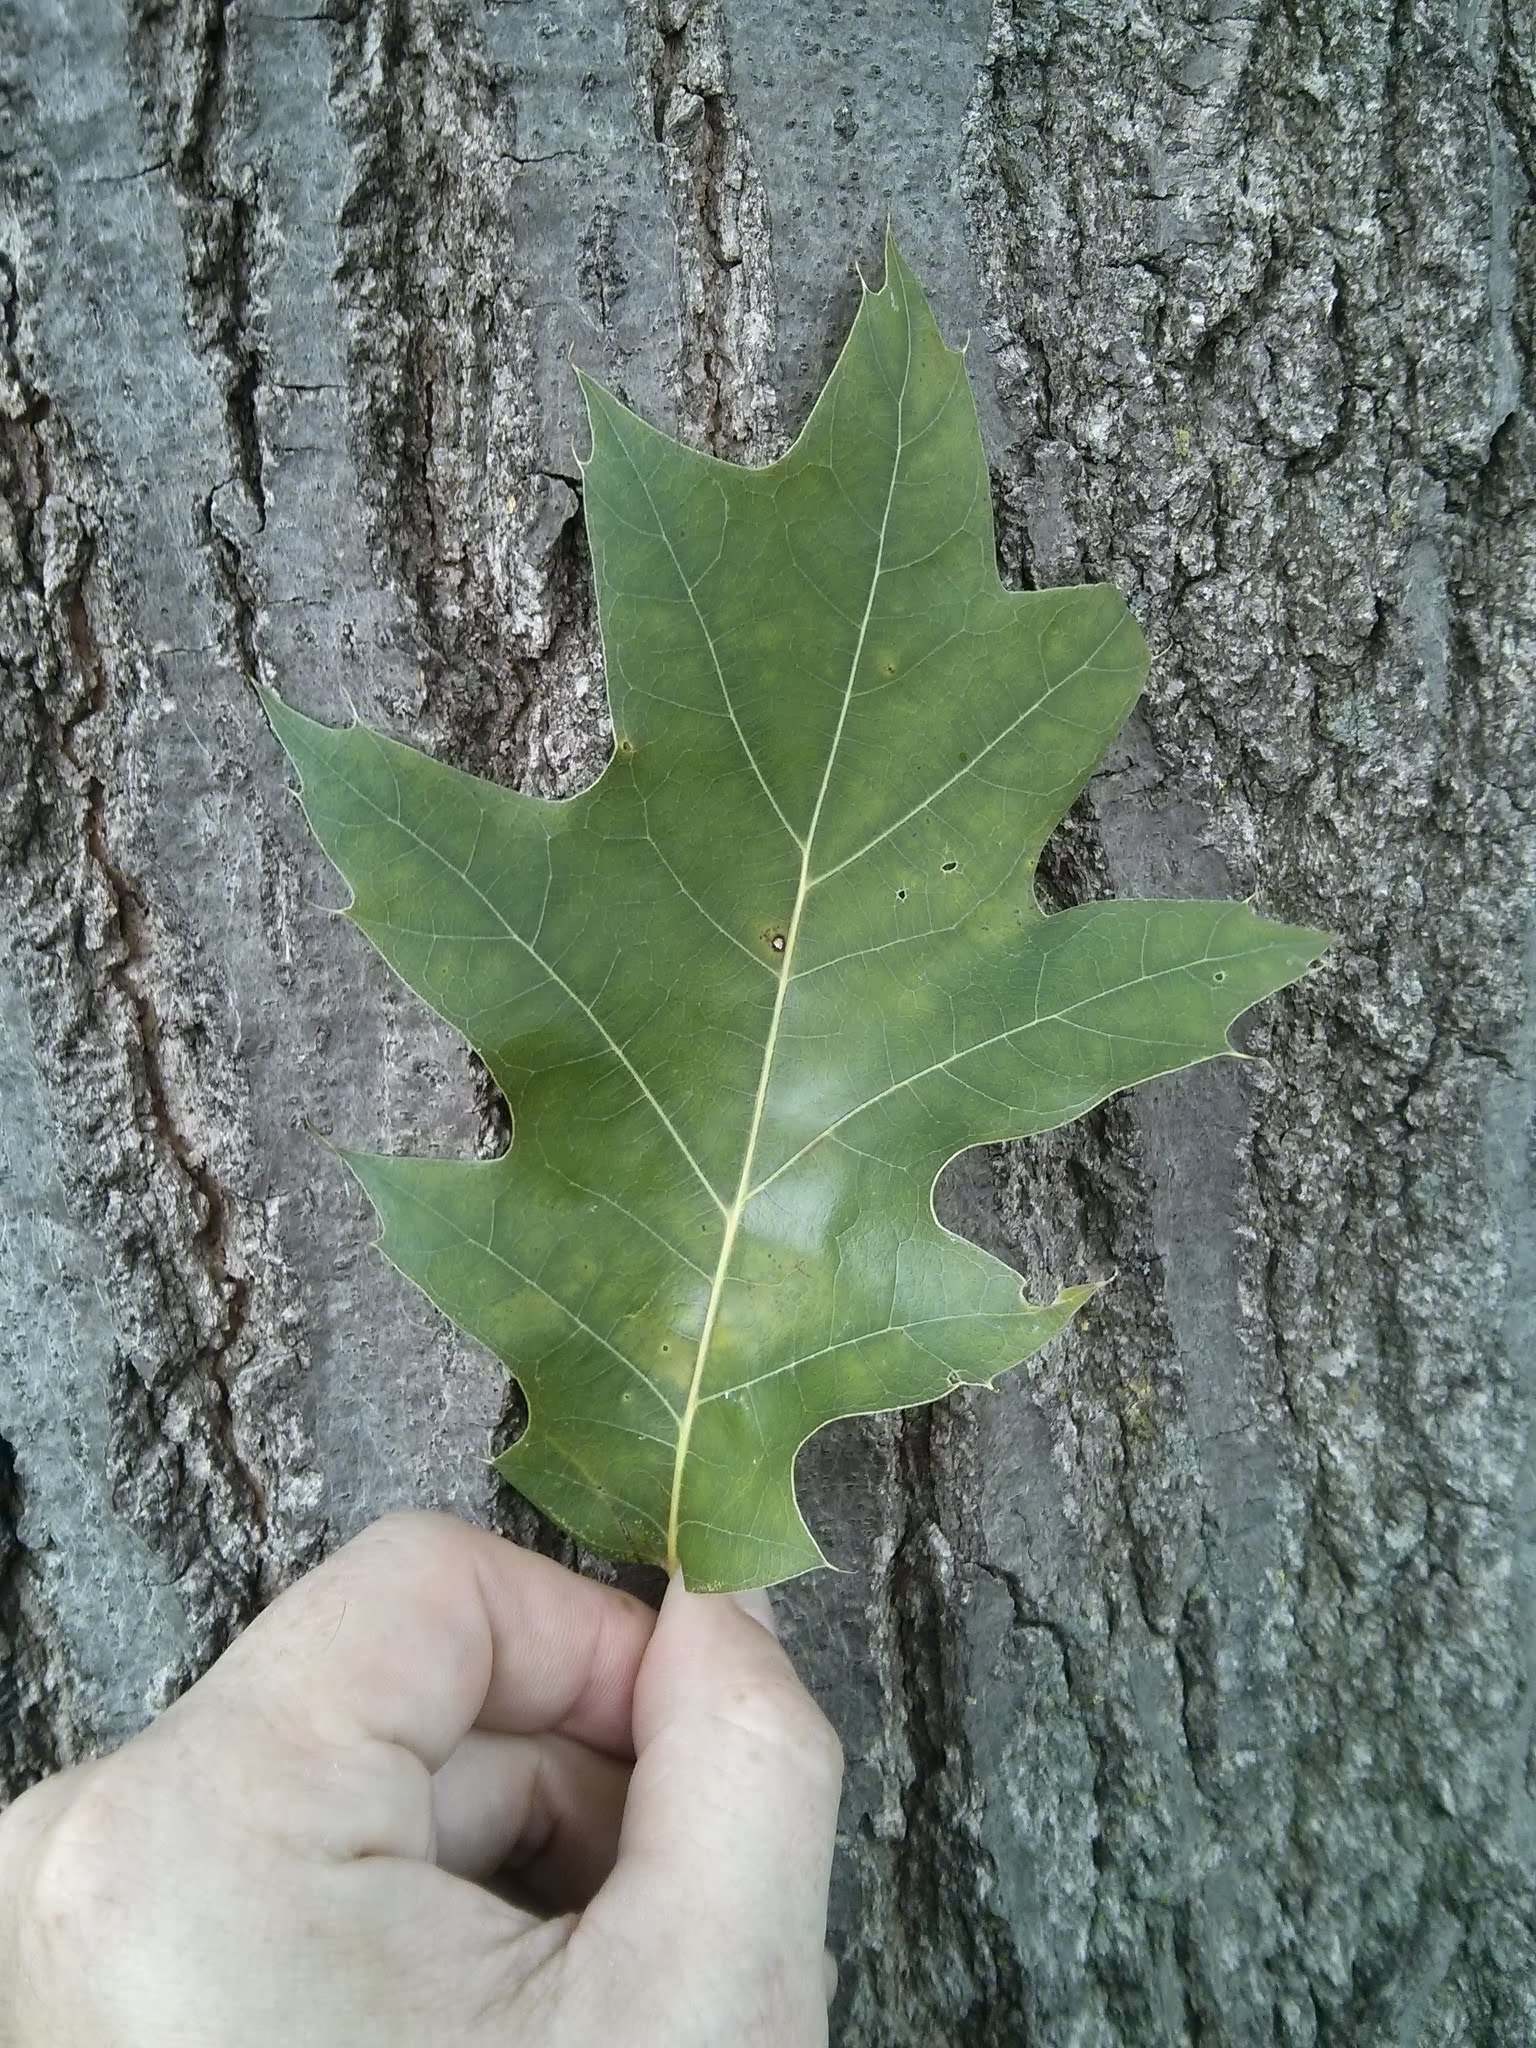 northern red oak foliage